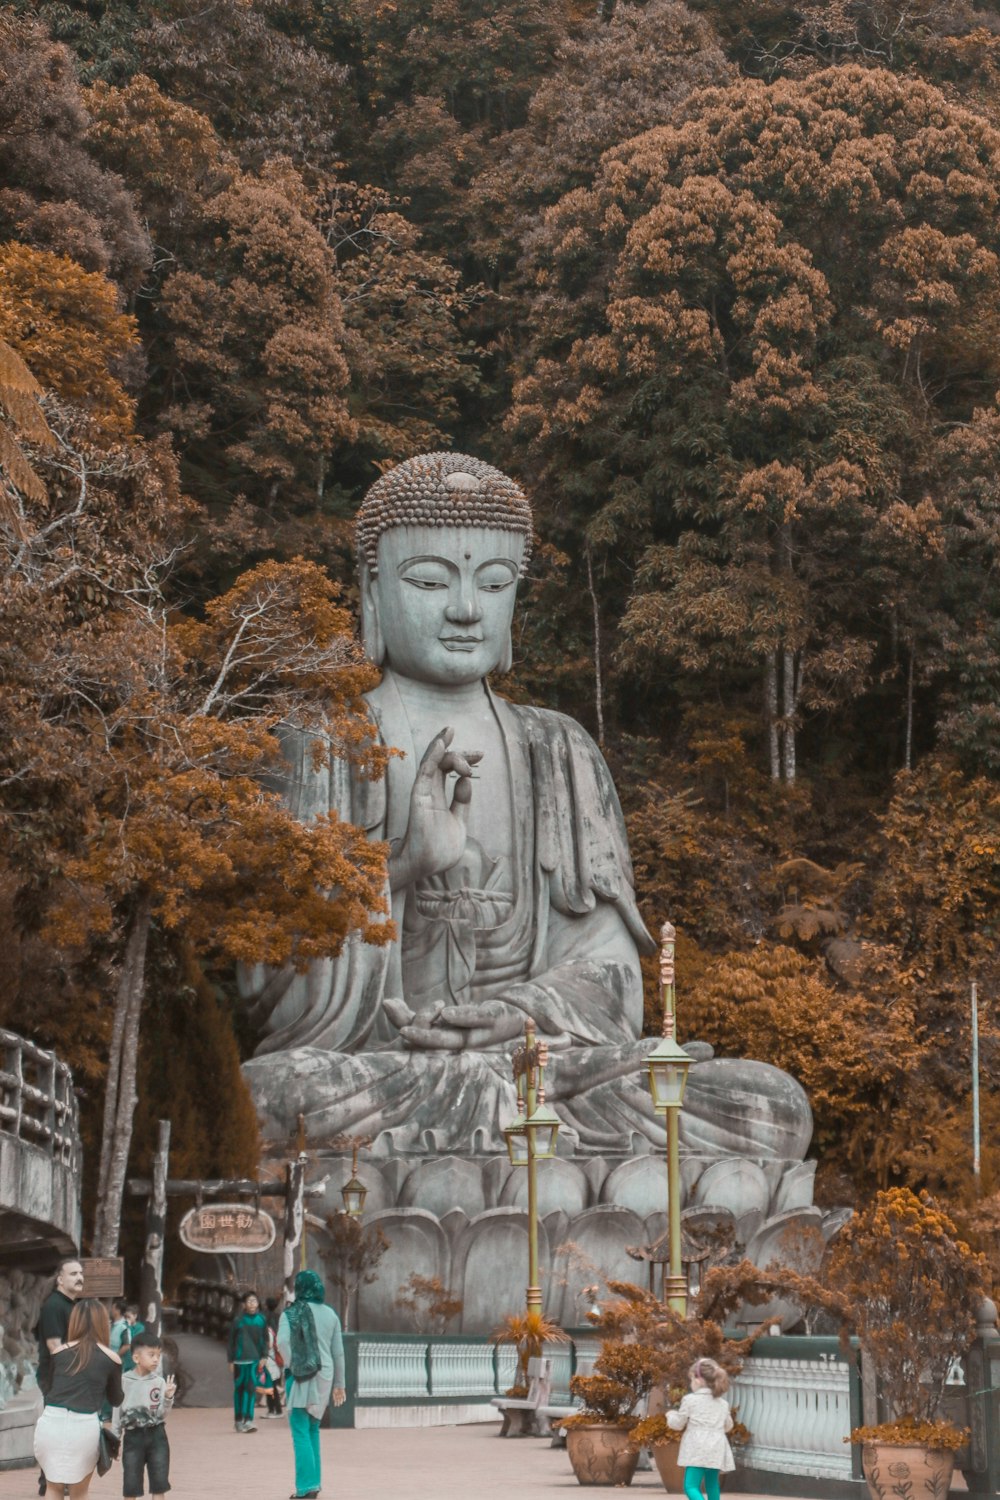 Menschen, die tagsüber in der Nähe der Buddha-Statue in der Nähe von Bäumen spazieren gehen